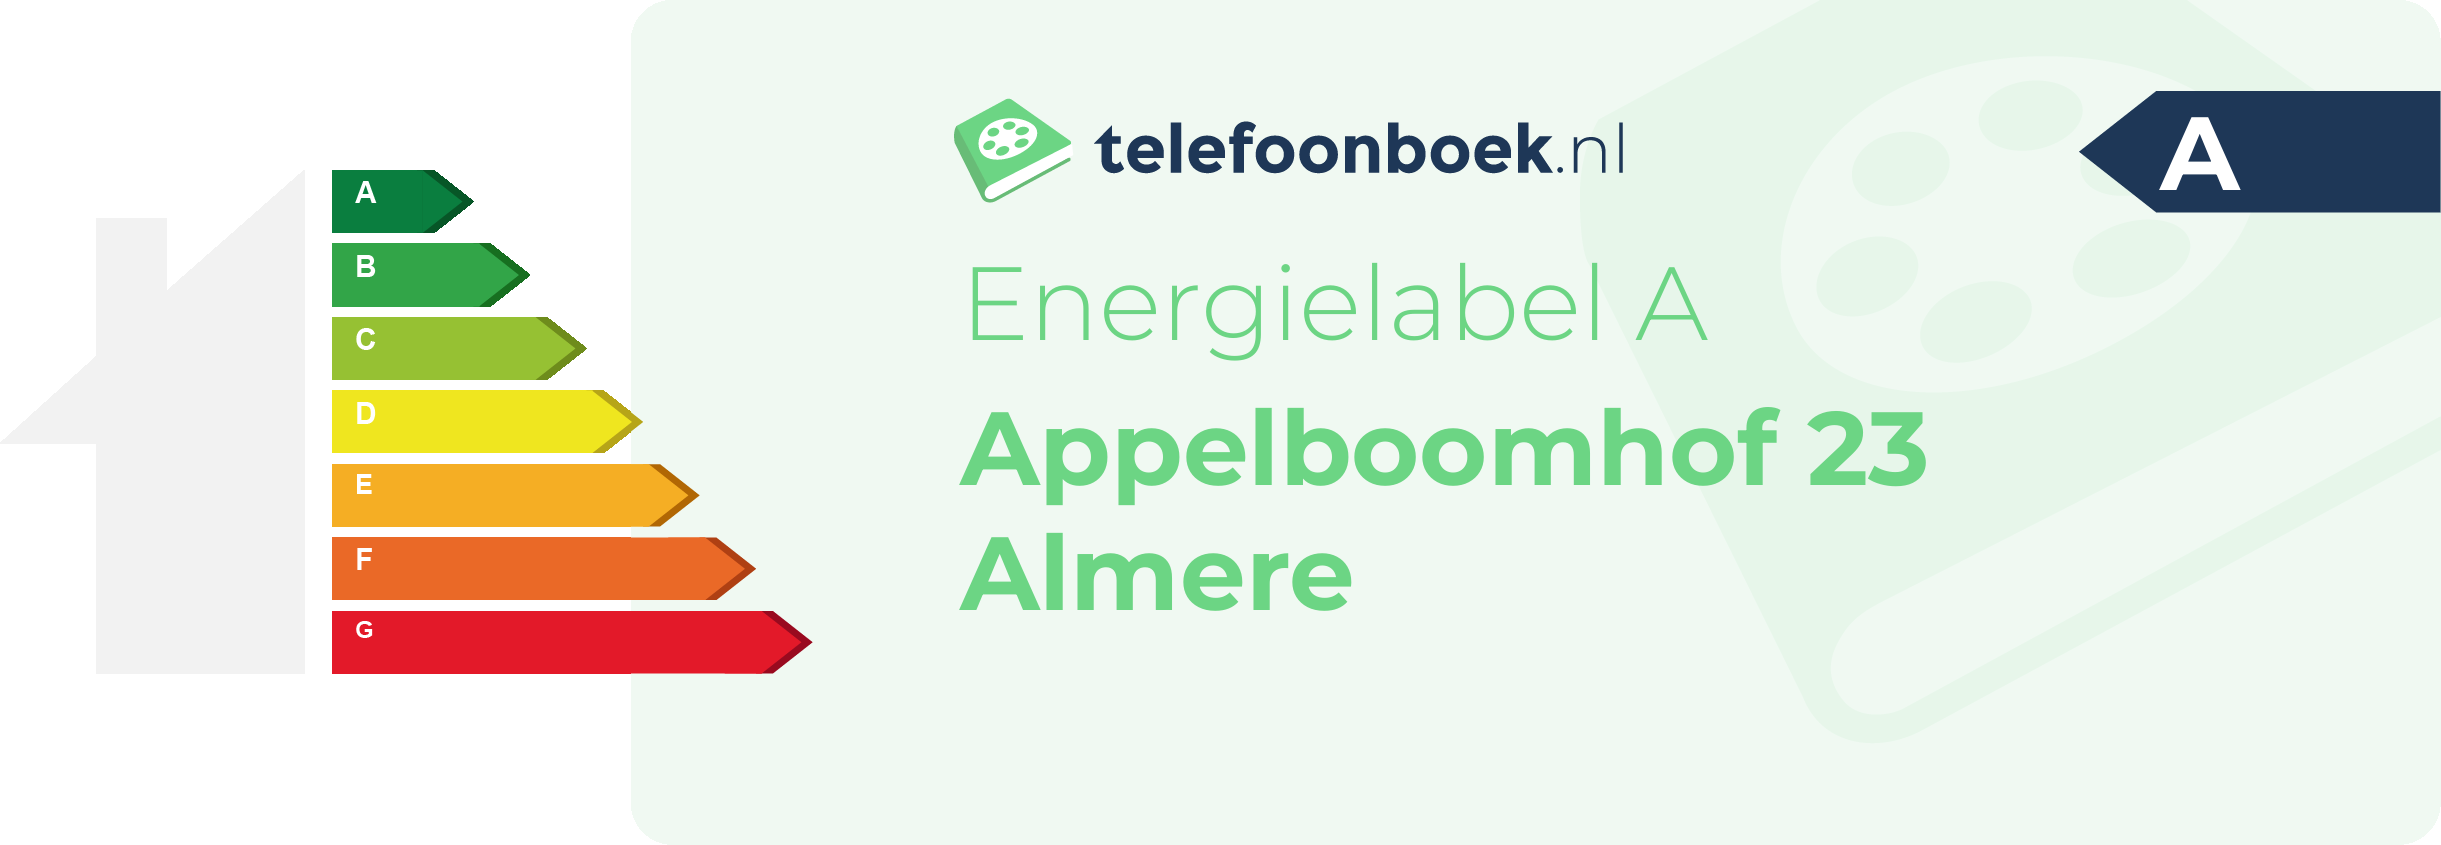 Energielabel Appelboomhof 23 Almere